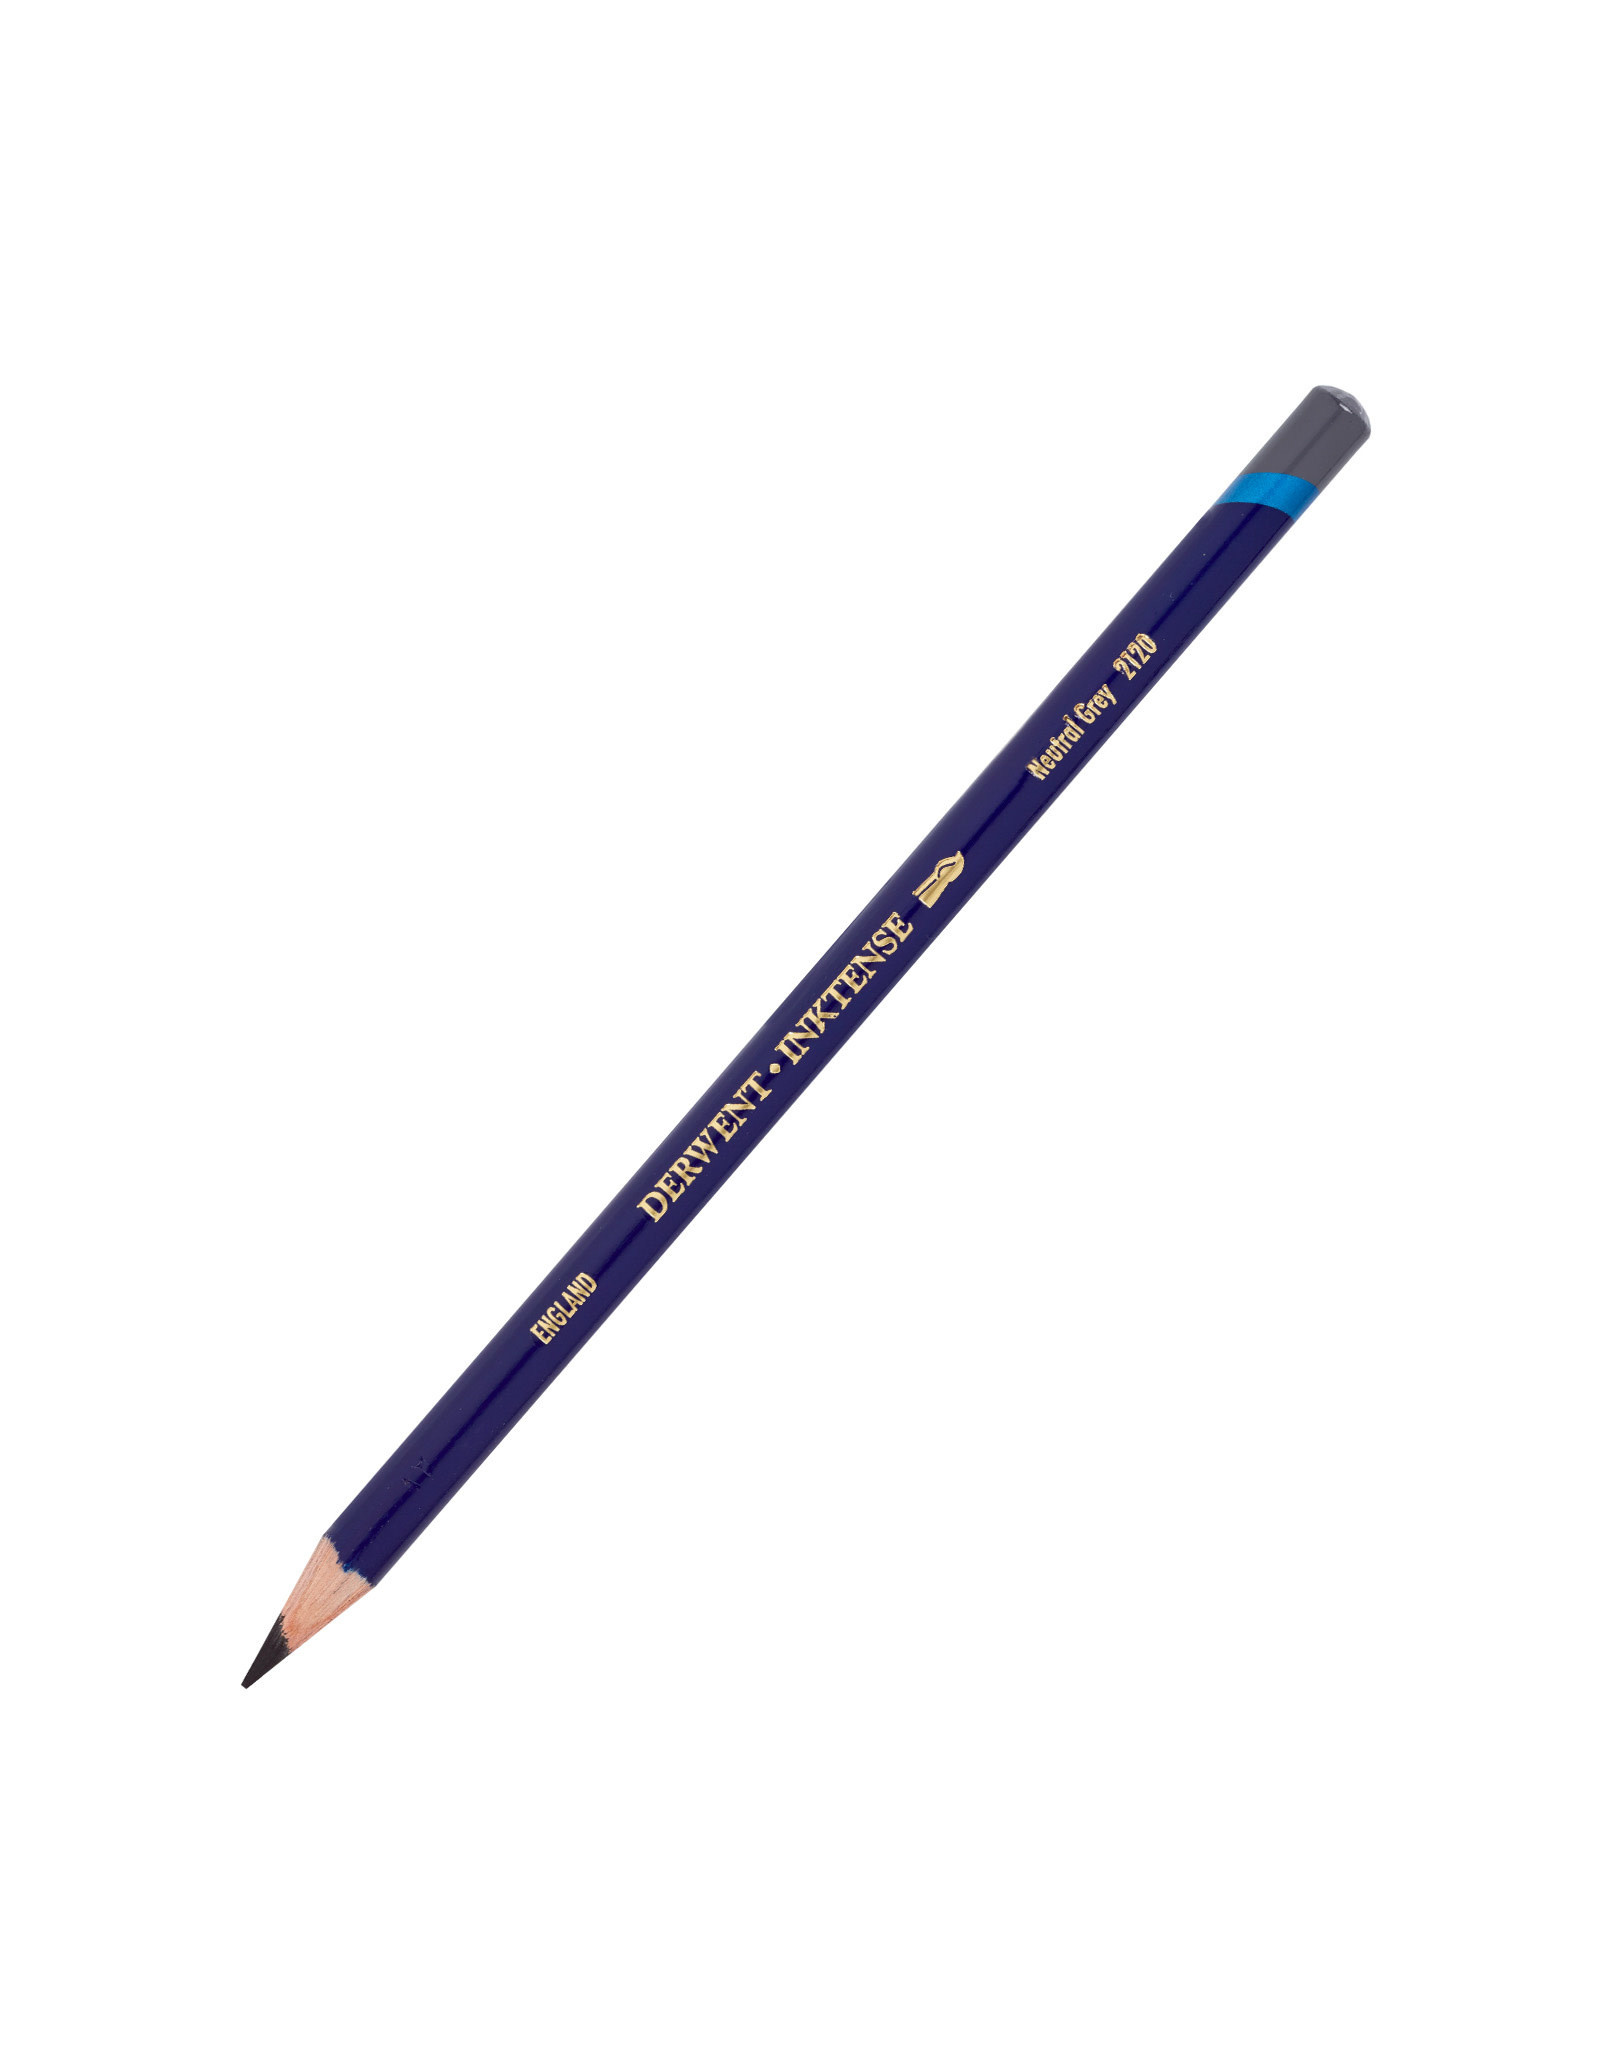 Derwent Derwent Inktense Pencil, Neutral Grey